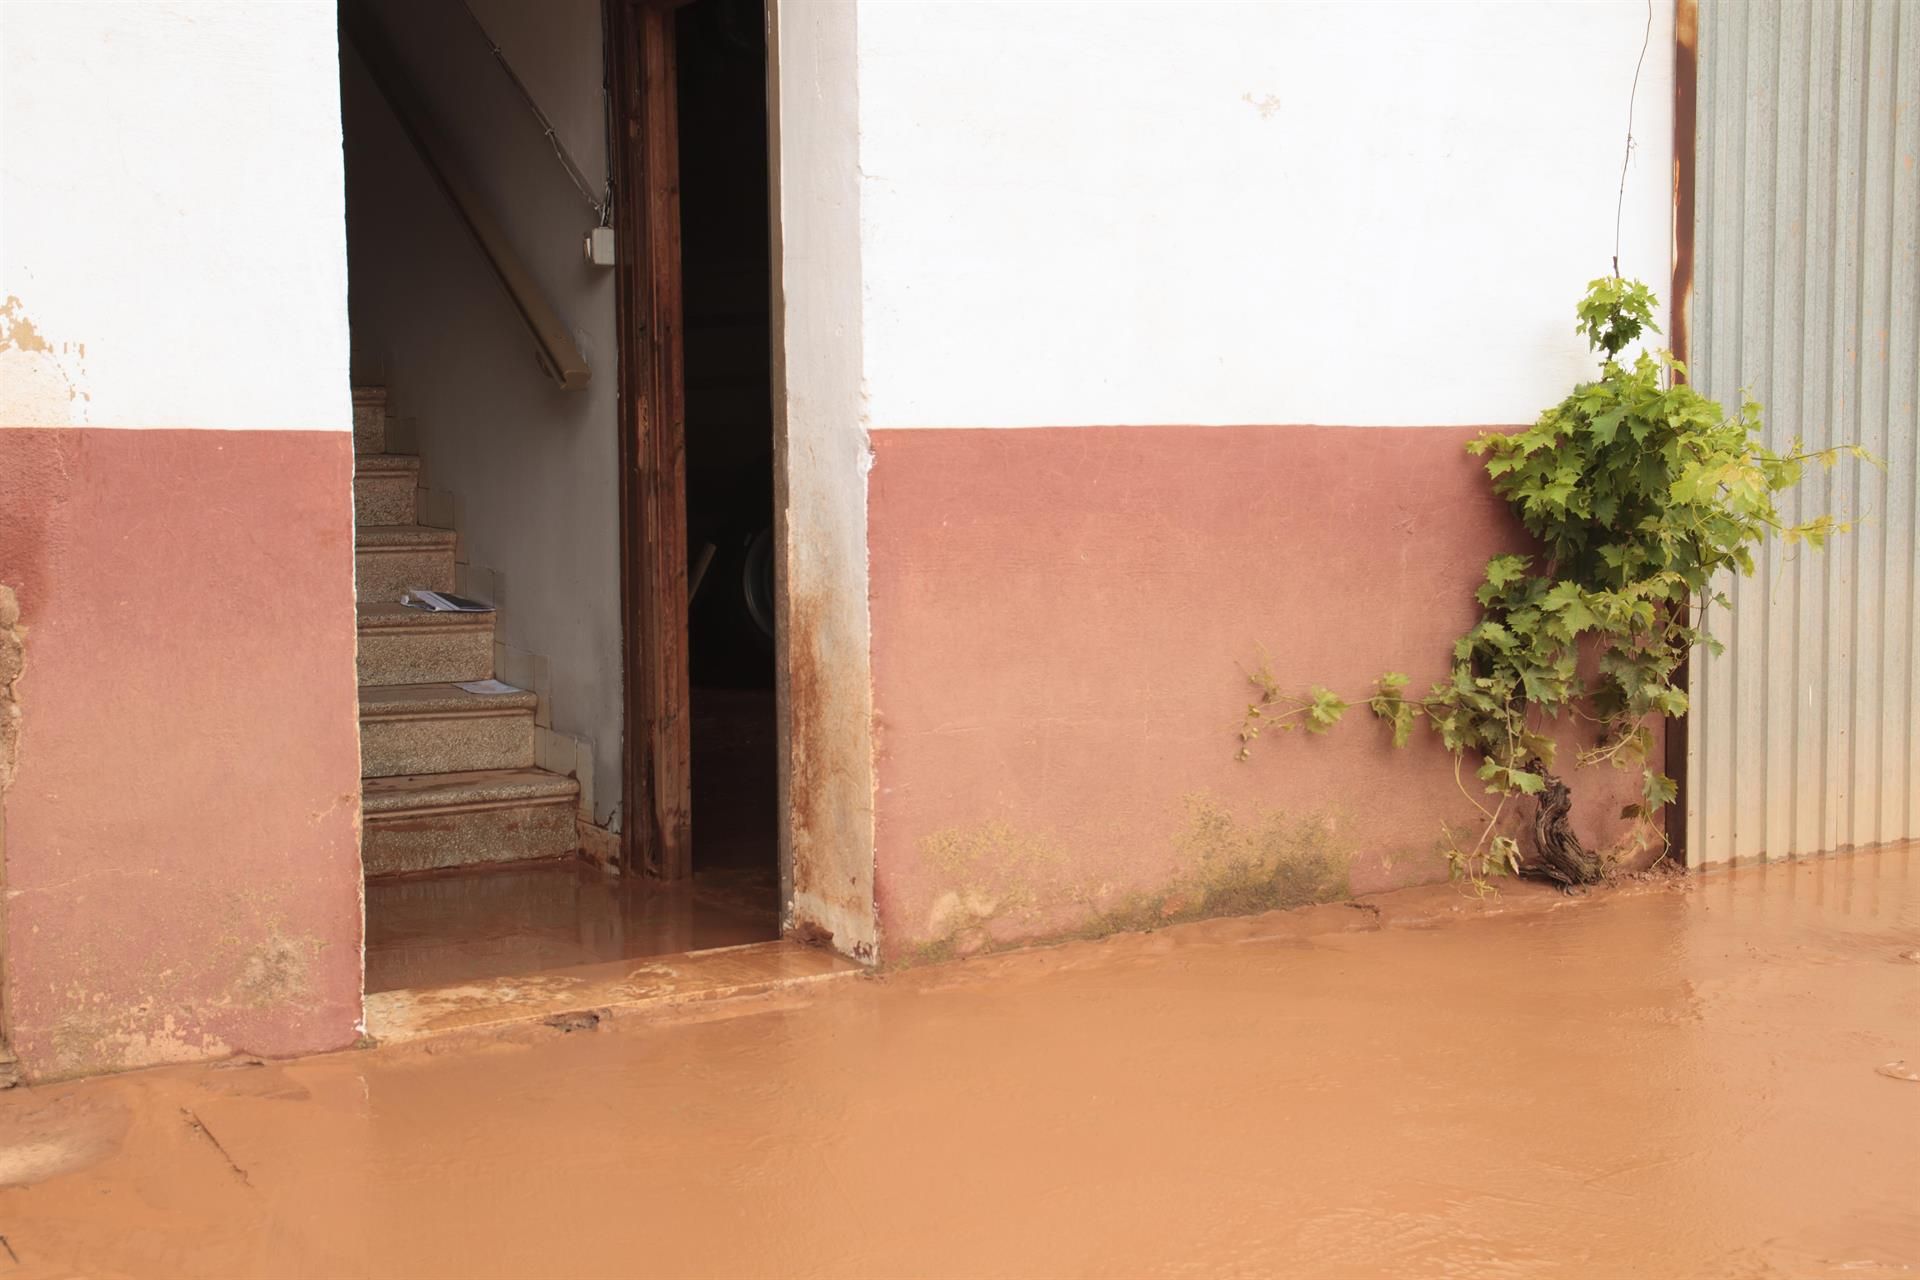 Vivienda inundada, tras el paso de la fuerte tormenta, en el municipio de Fuenmayor, junio de 2021 / Foto: EP